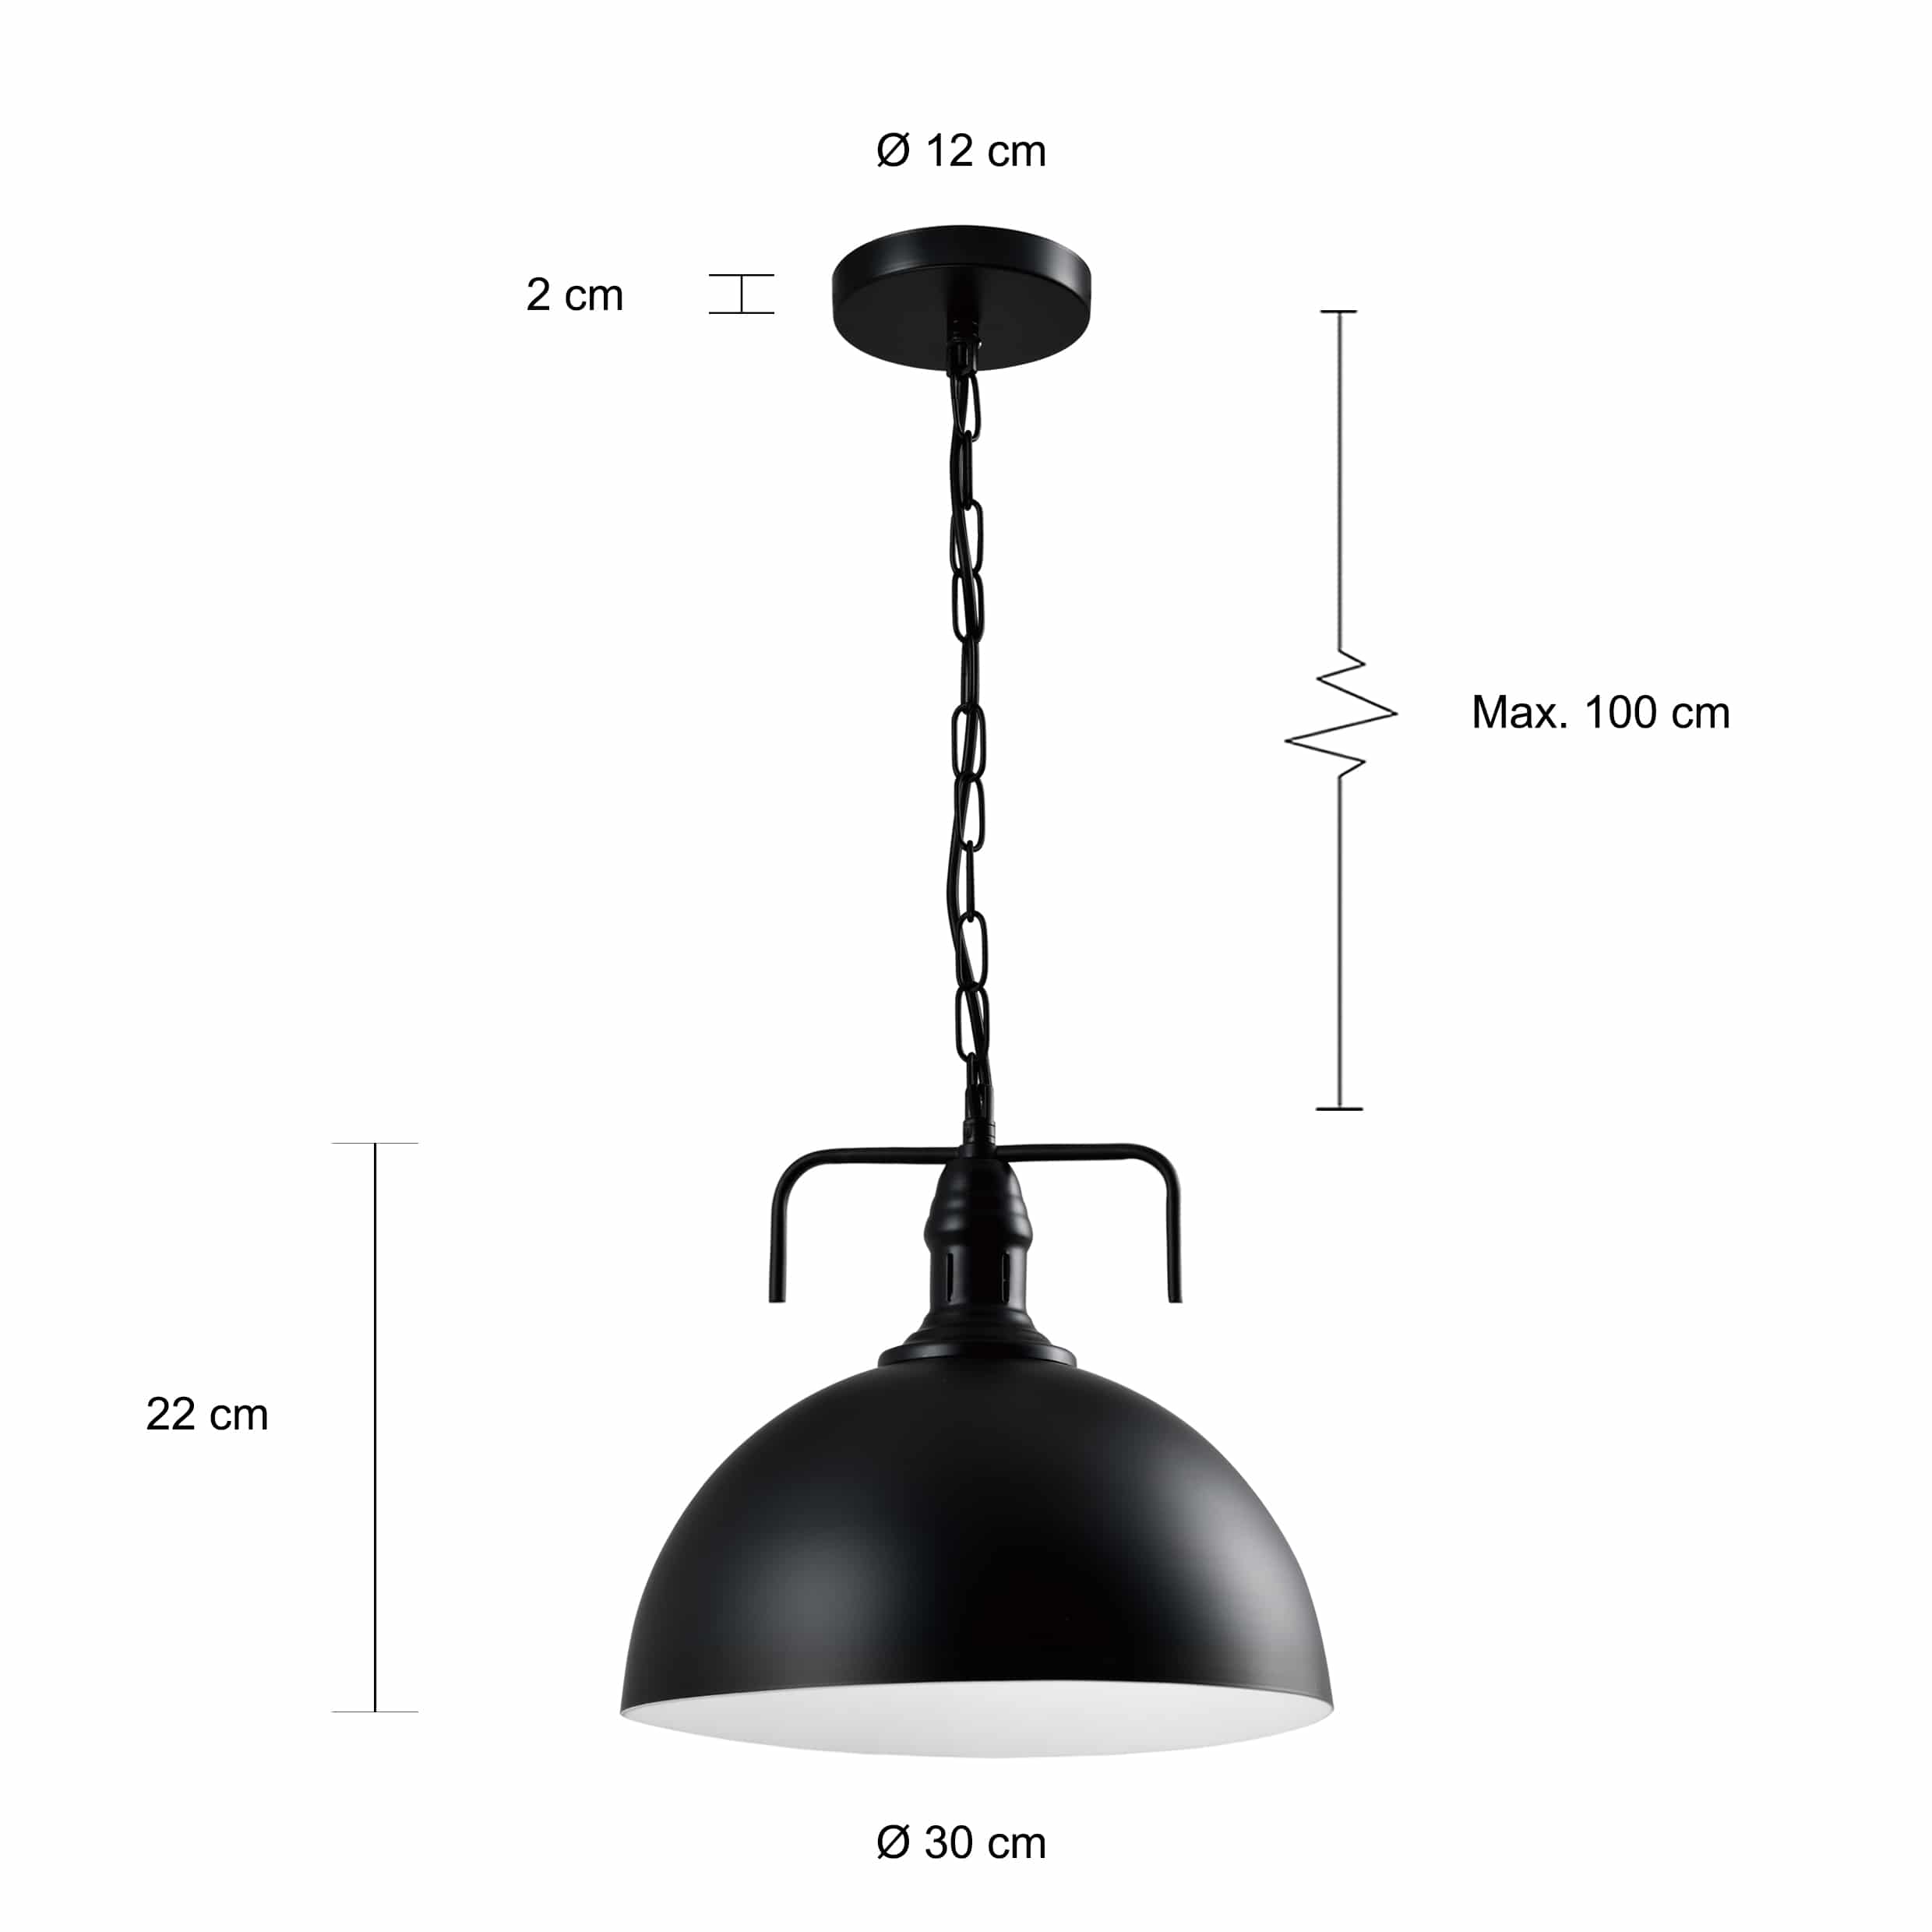 Lamp met een diameter van 30 cm